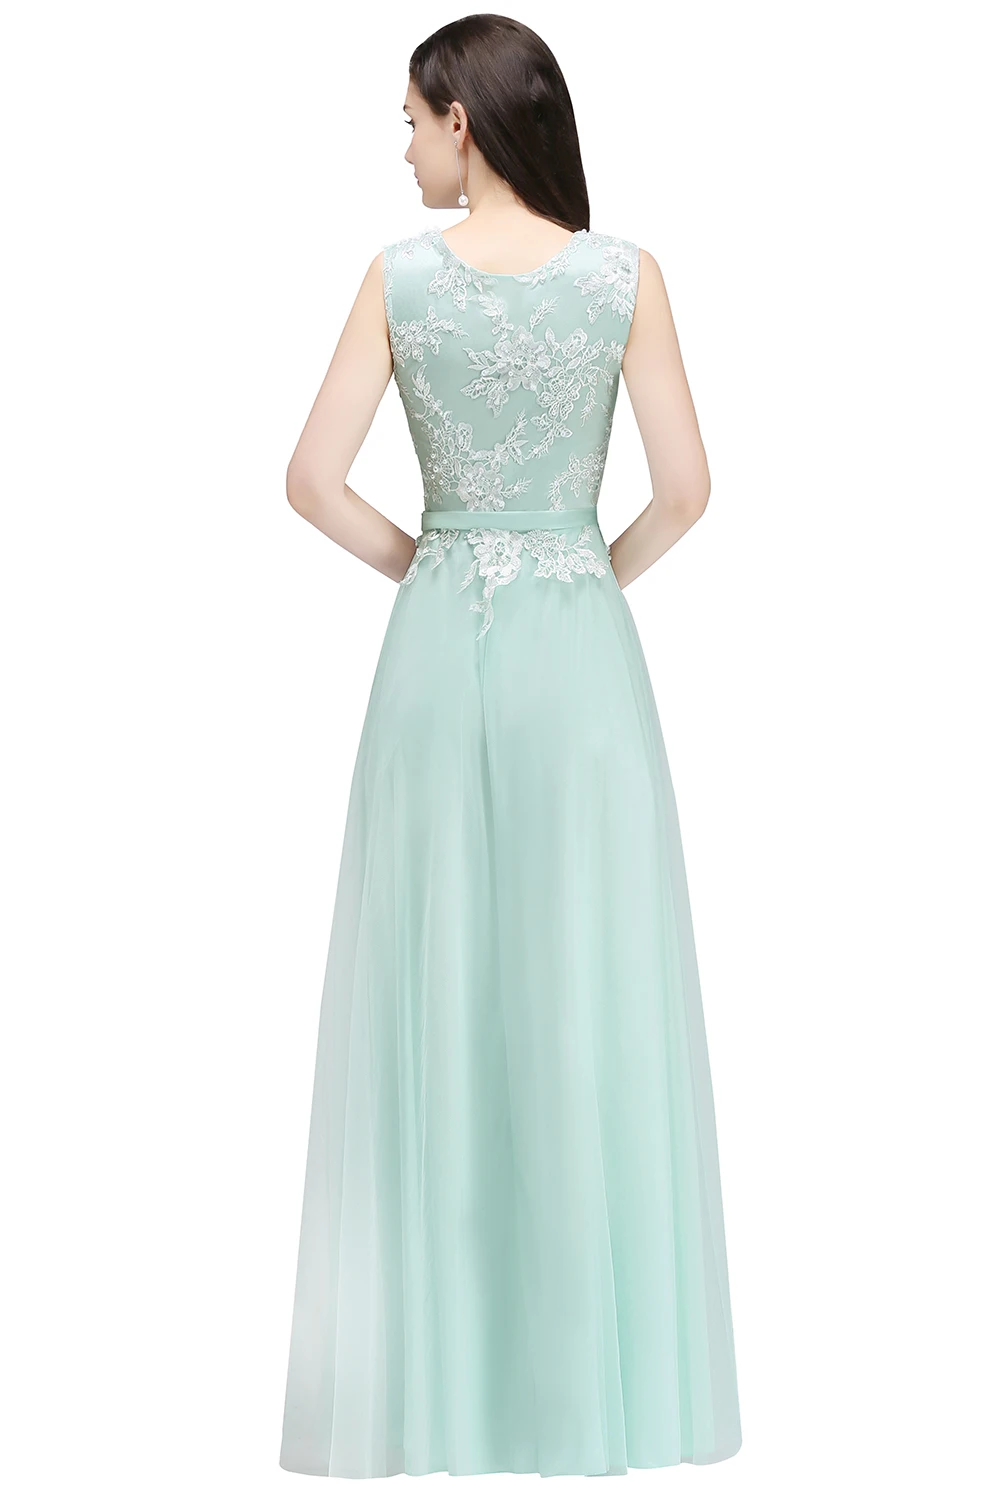 BABYONLINE vestido de dama de honor Verde menta, encaje Floral, falda de gasa sin mangas, vestido Formal para invitados de boda, vestido Eleagant